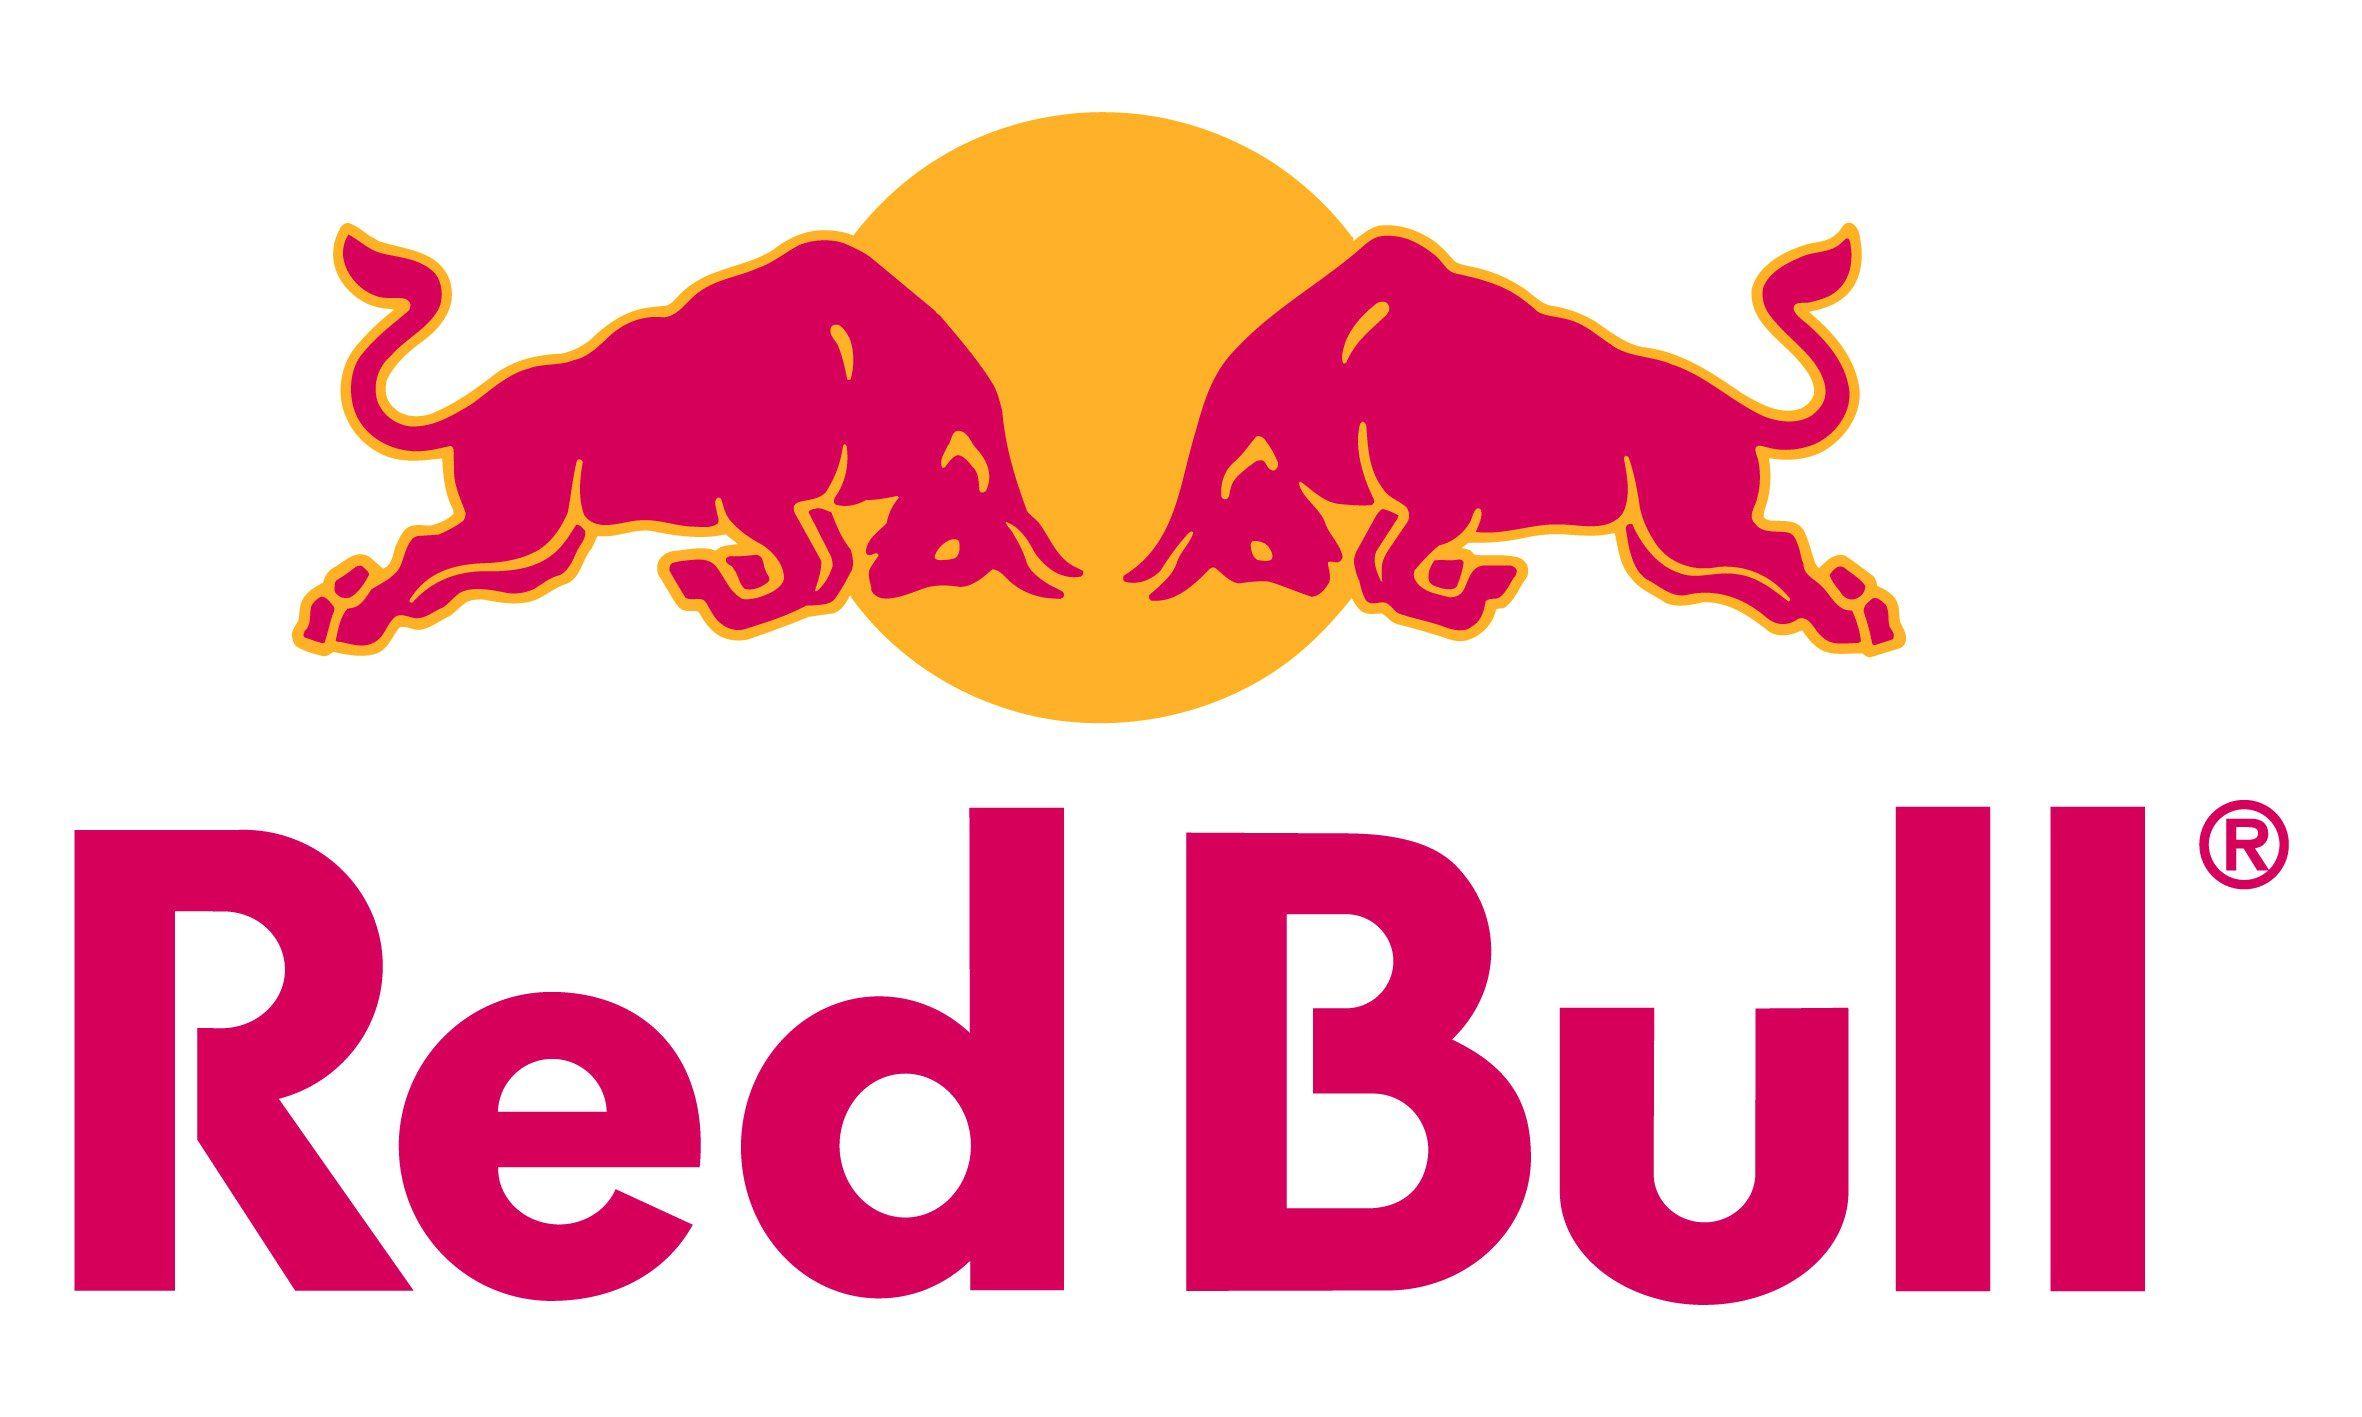 Red Bull Logo Wallpaper